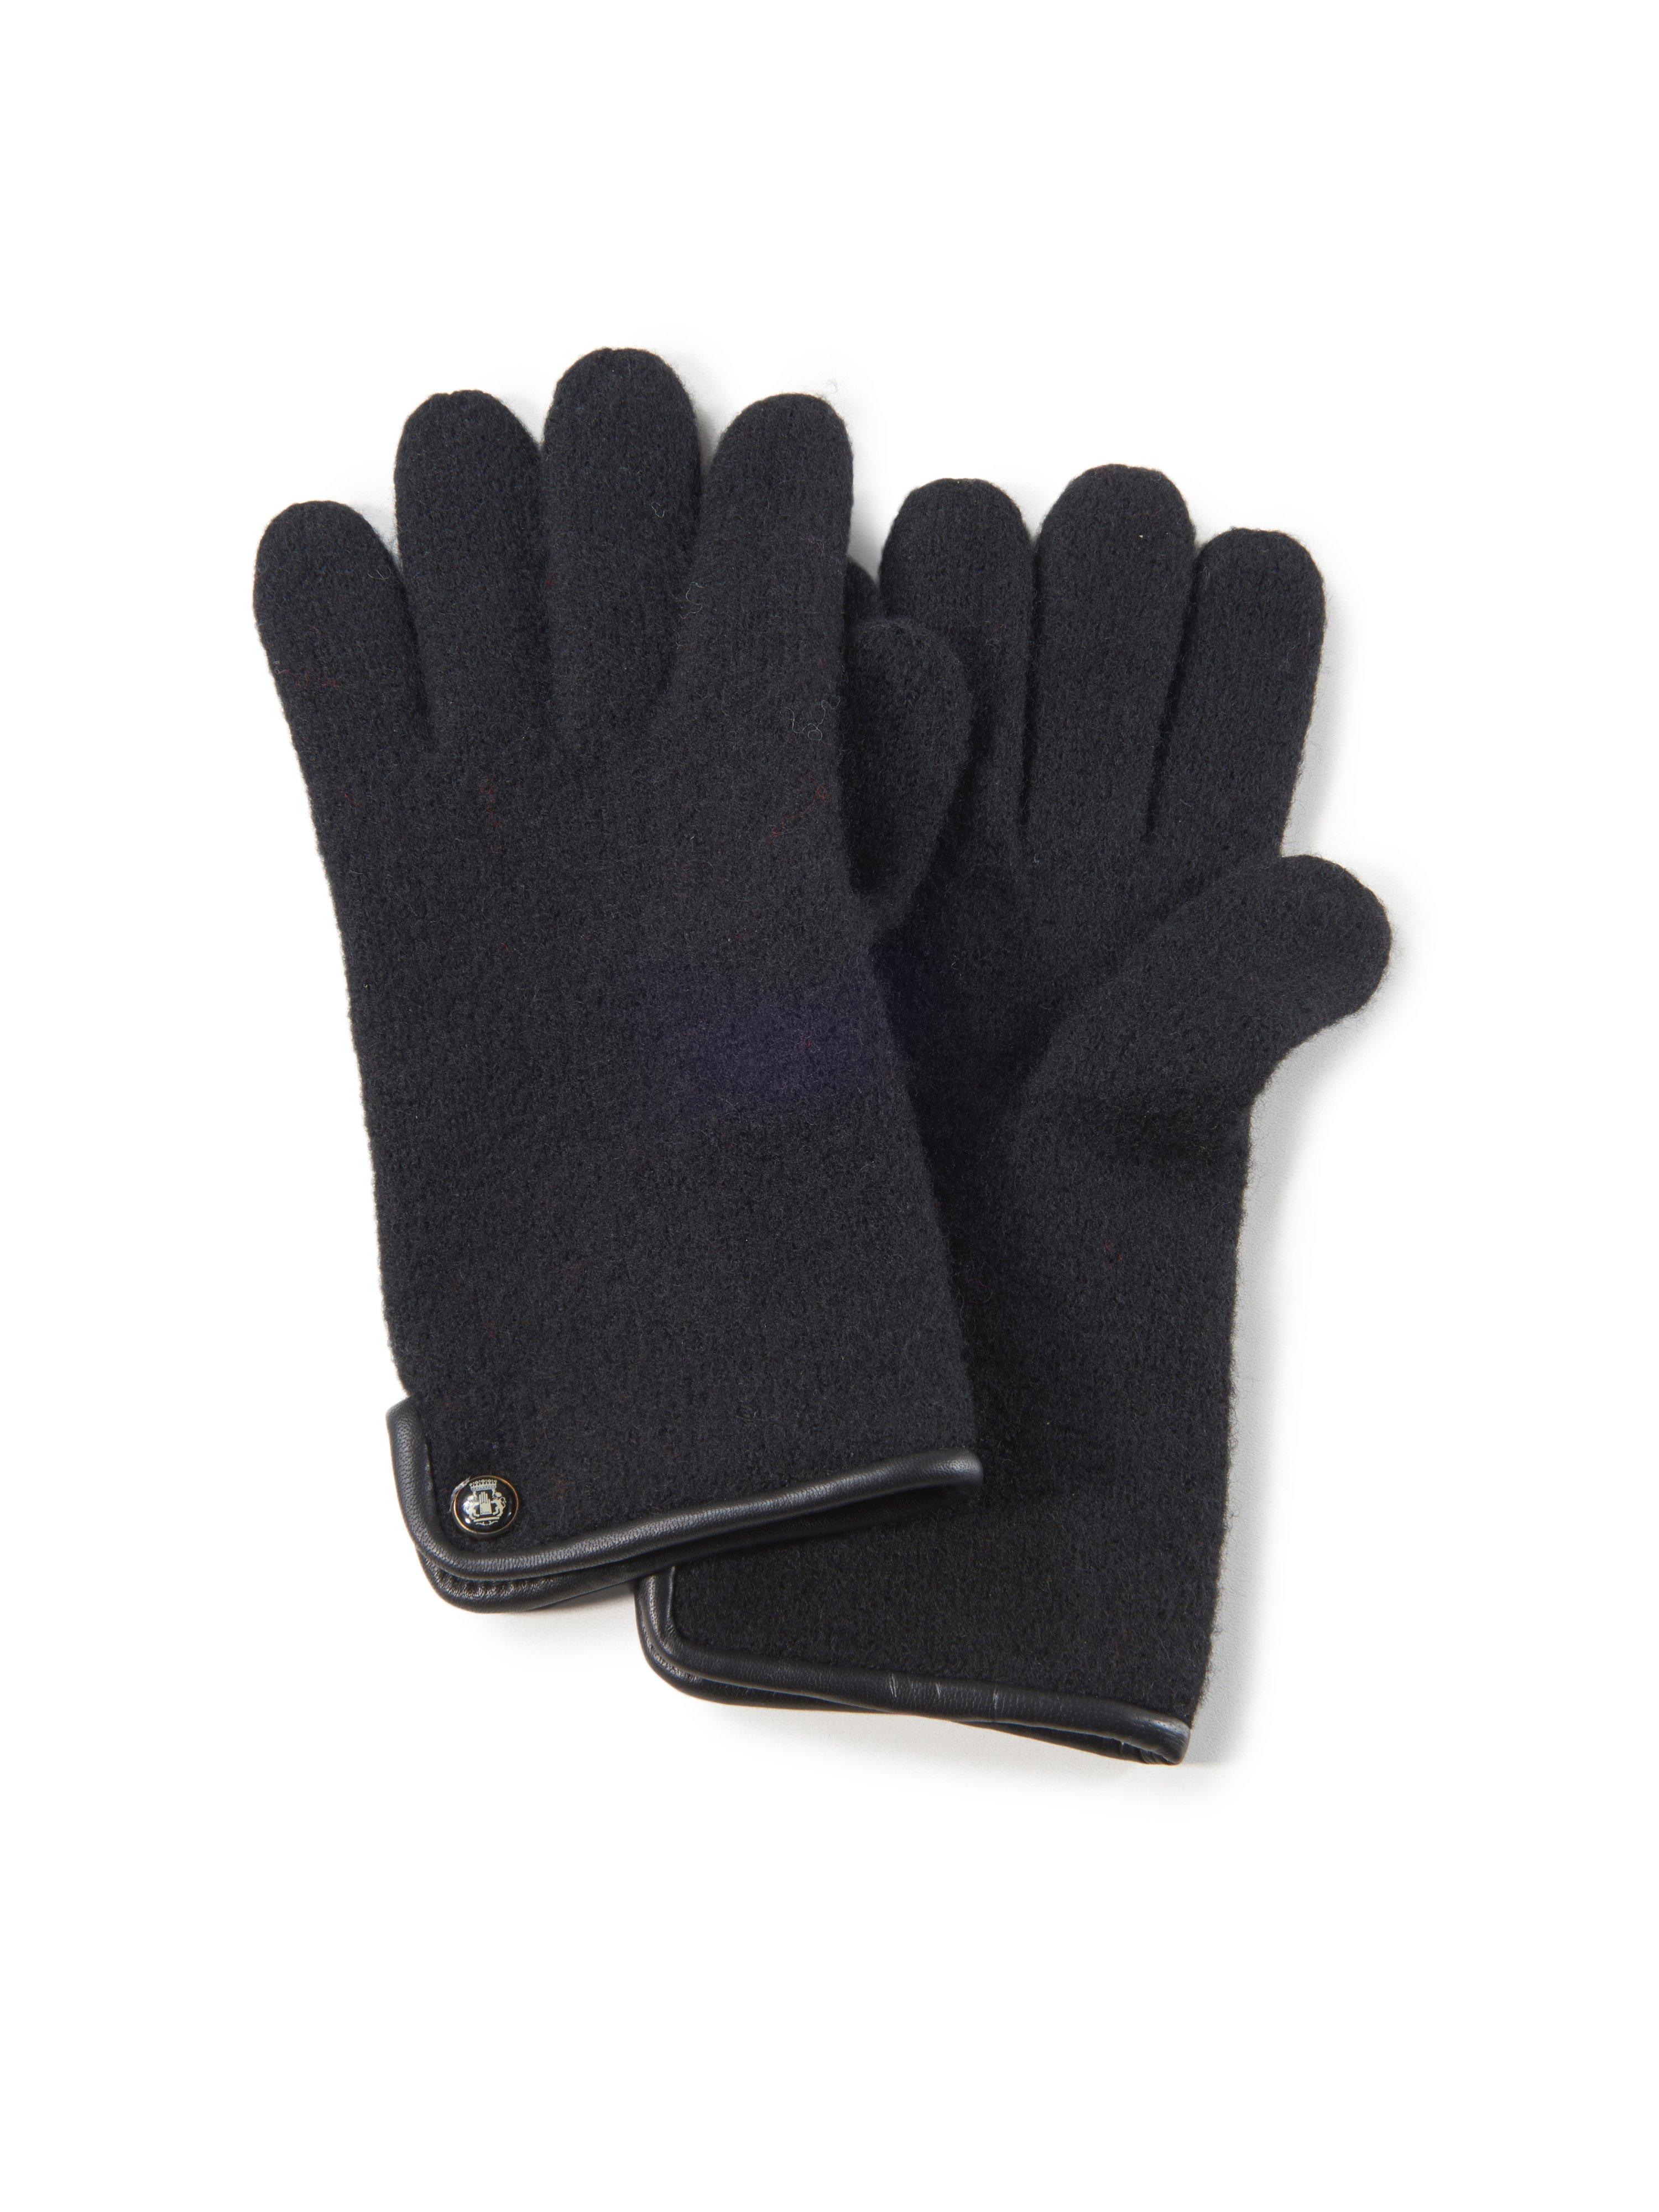 Roeckl Handschoenen S - zwart - zwart